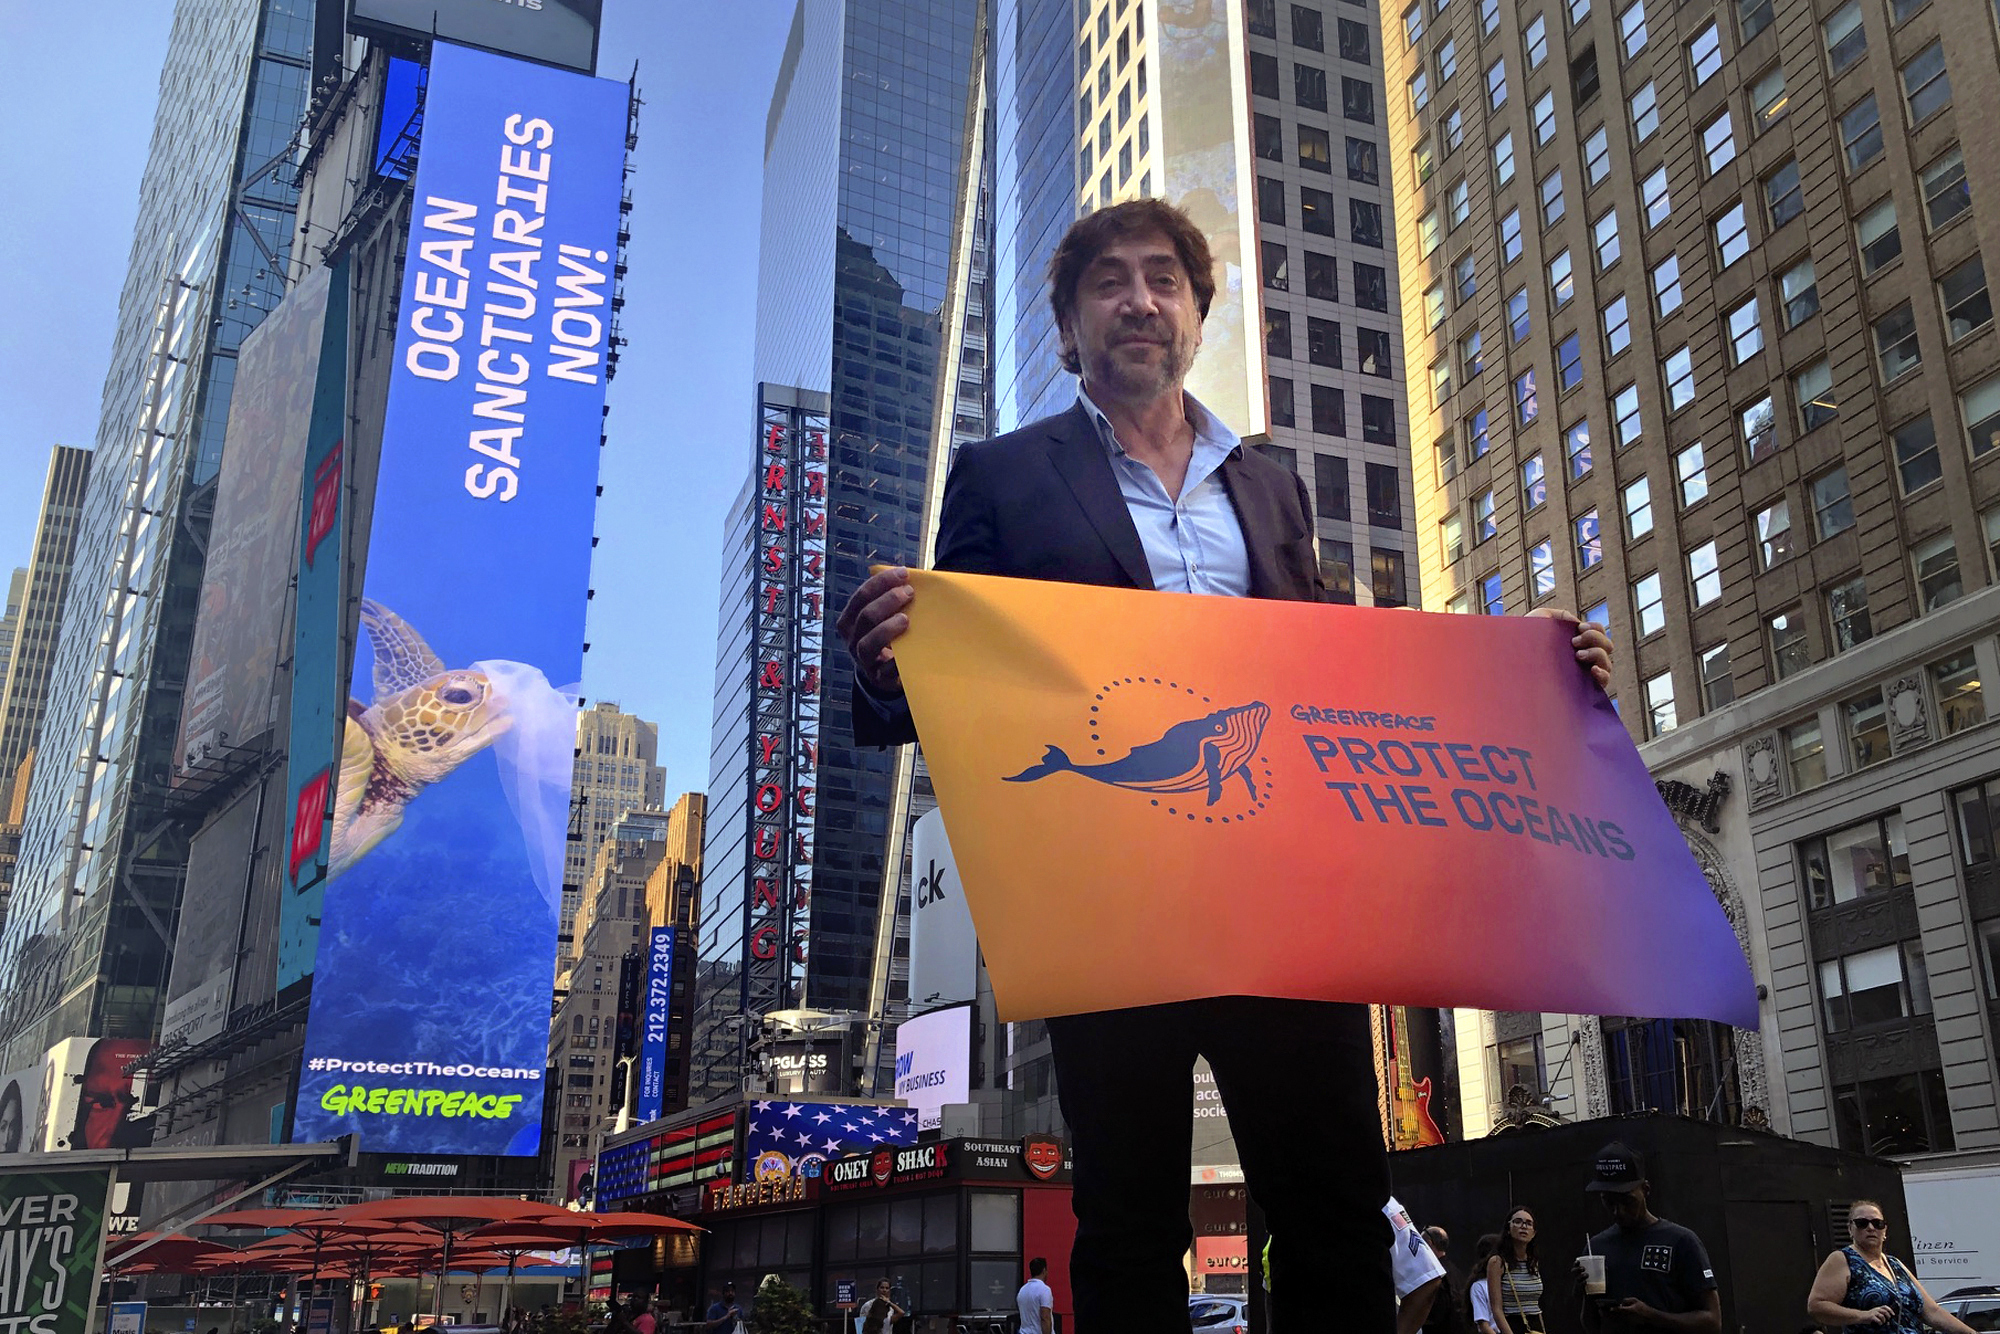 Španielsky oscarový herec Javier Bardem  pózuje s transparentom s nápisom Zachráňme svetové oceány na Times Square v New Yorku v pondelok 19. augusta 2019